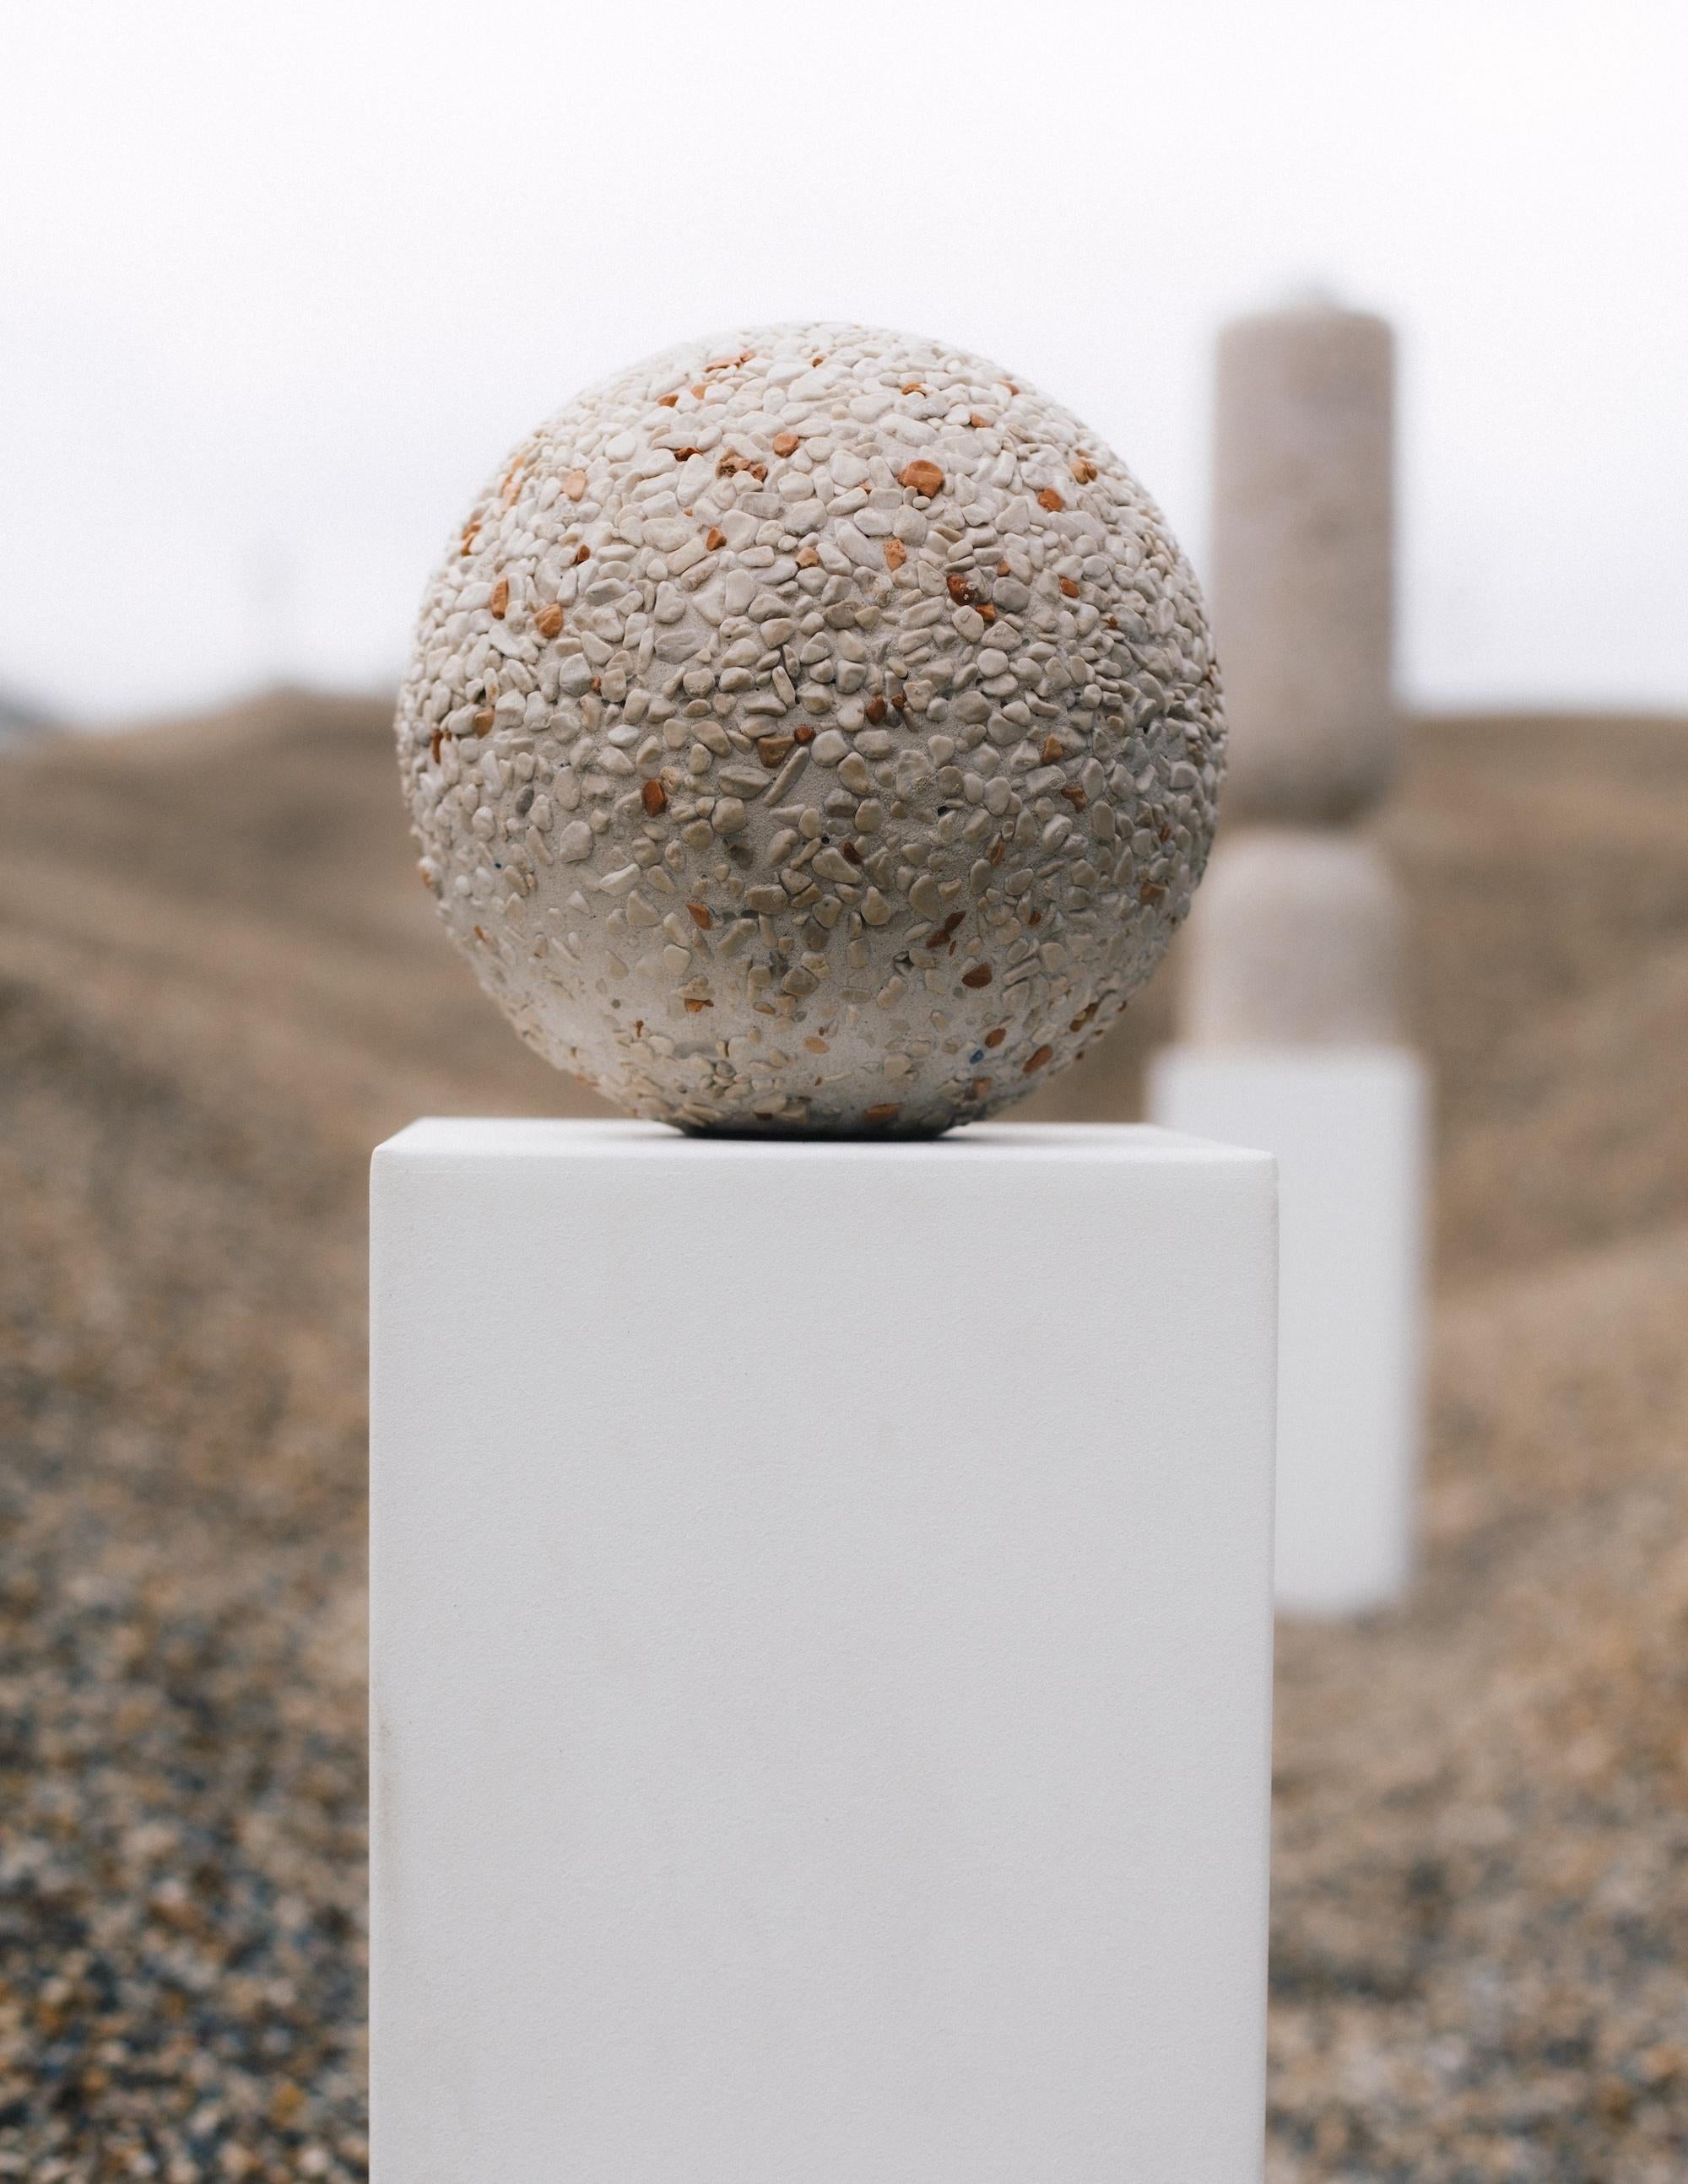 Sculpture de sol en forme de boule par VAUST
Édition ouverte
Dimensions : 25 cm
Matériaux : béton massif à granulats apparents
Également disponible : Une sélection de matériaux personnalisés peut être proposée sur demande et après approbation du